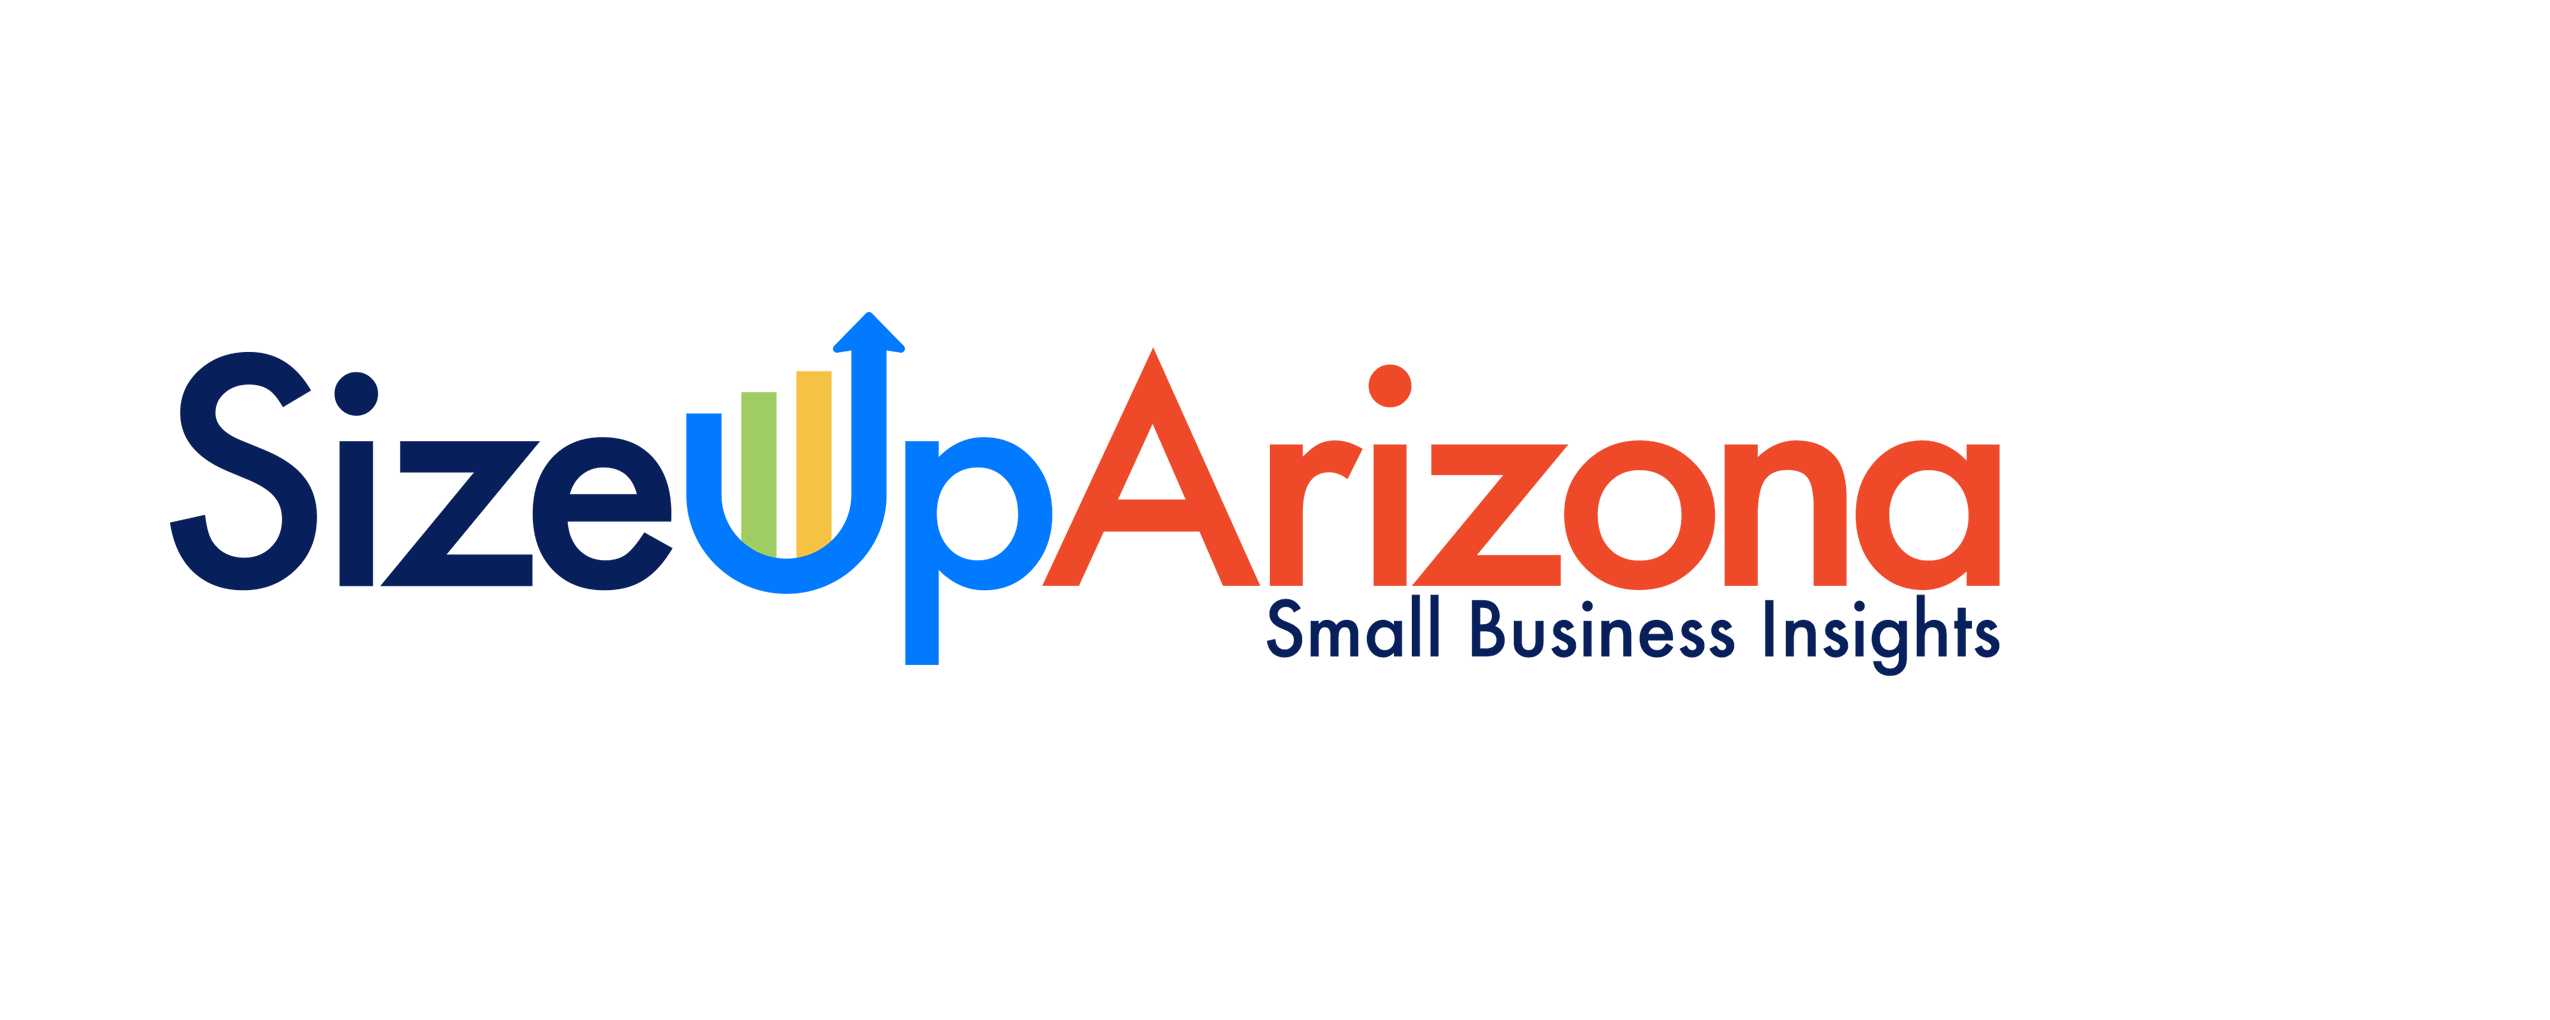 SizeUpArizona - Big Data for Arizona's Small Businesses